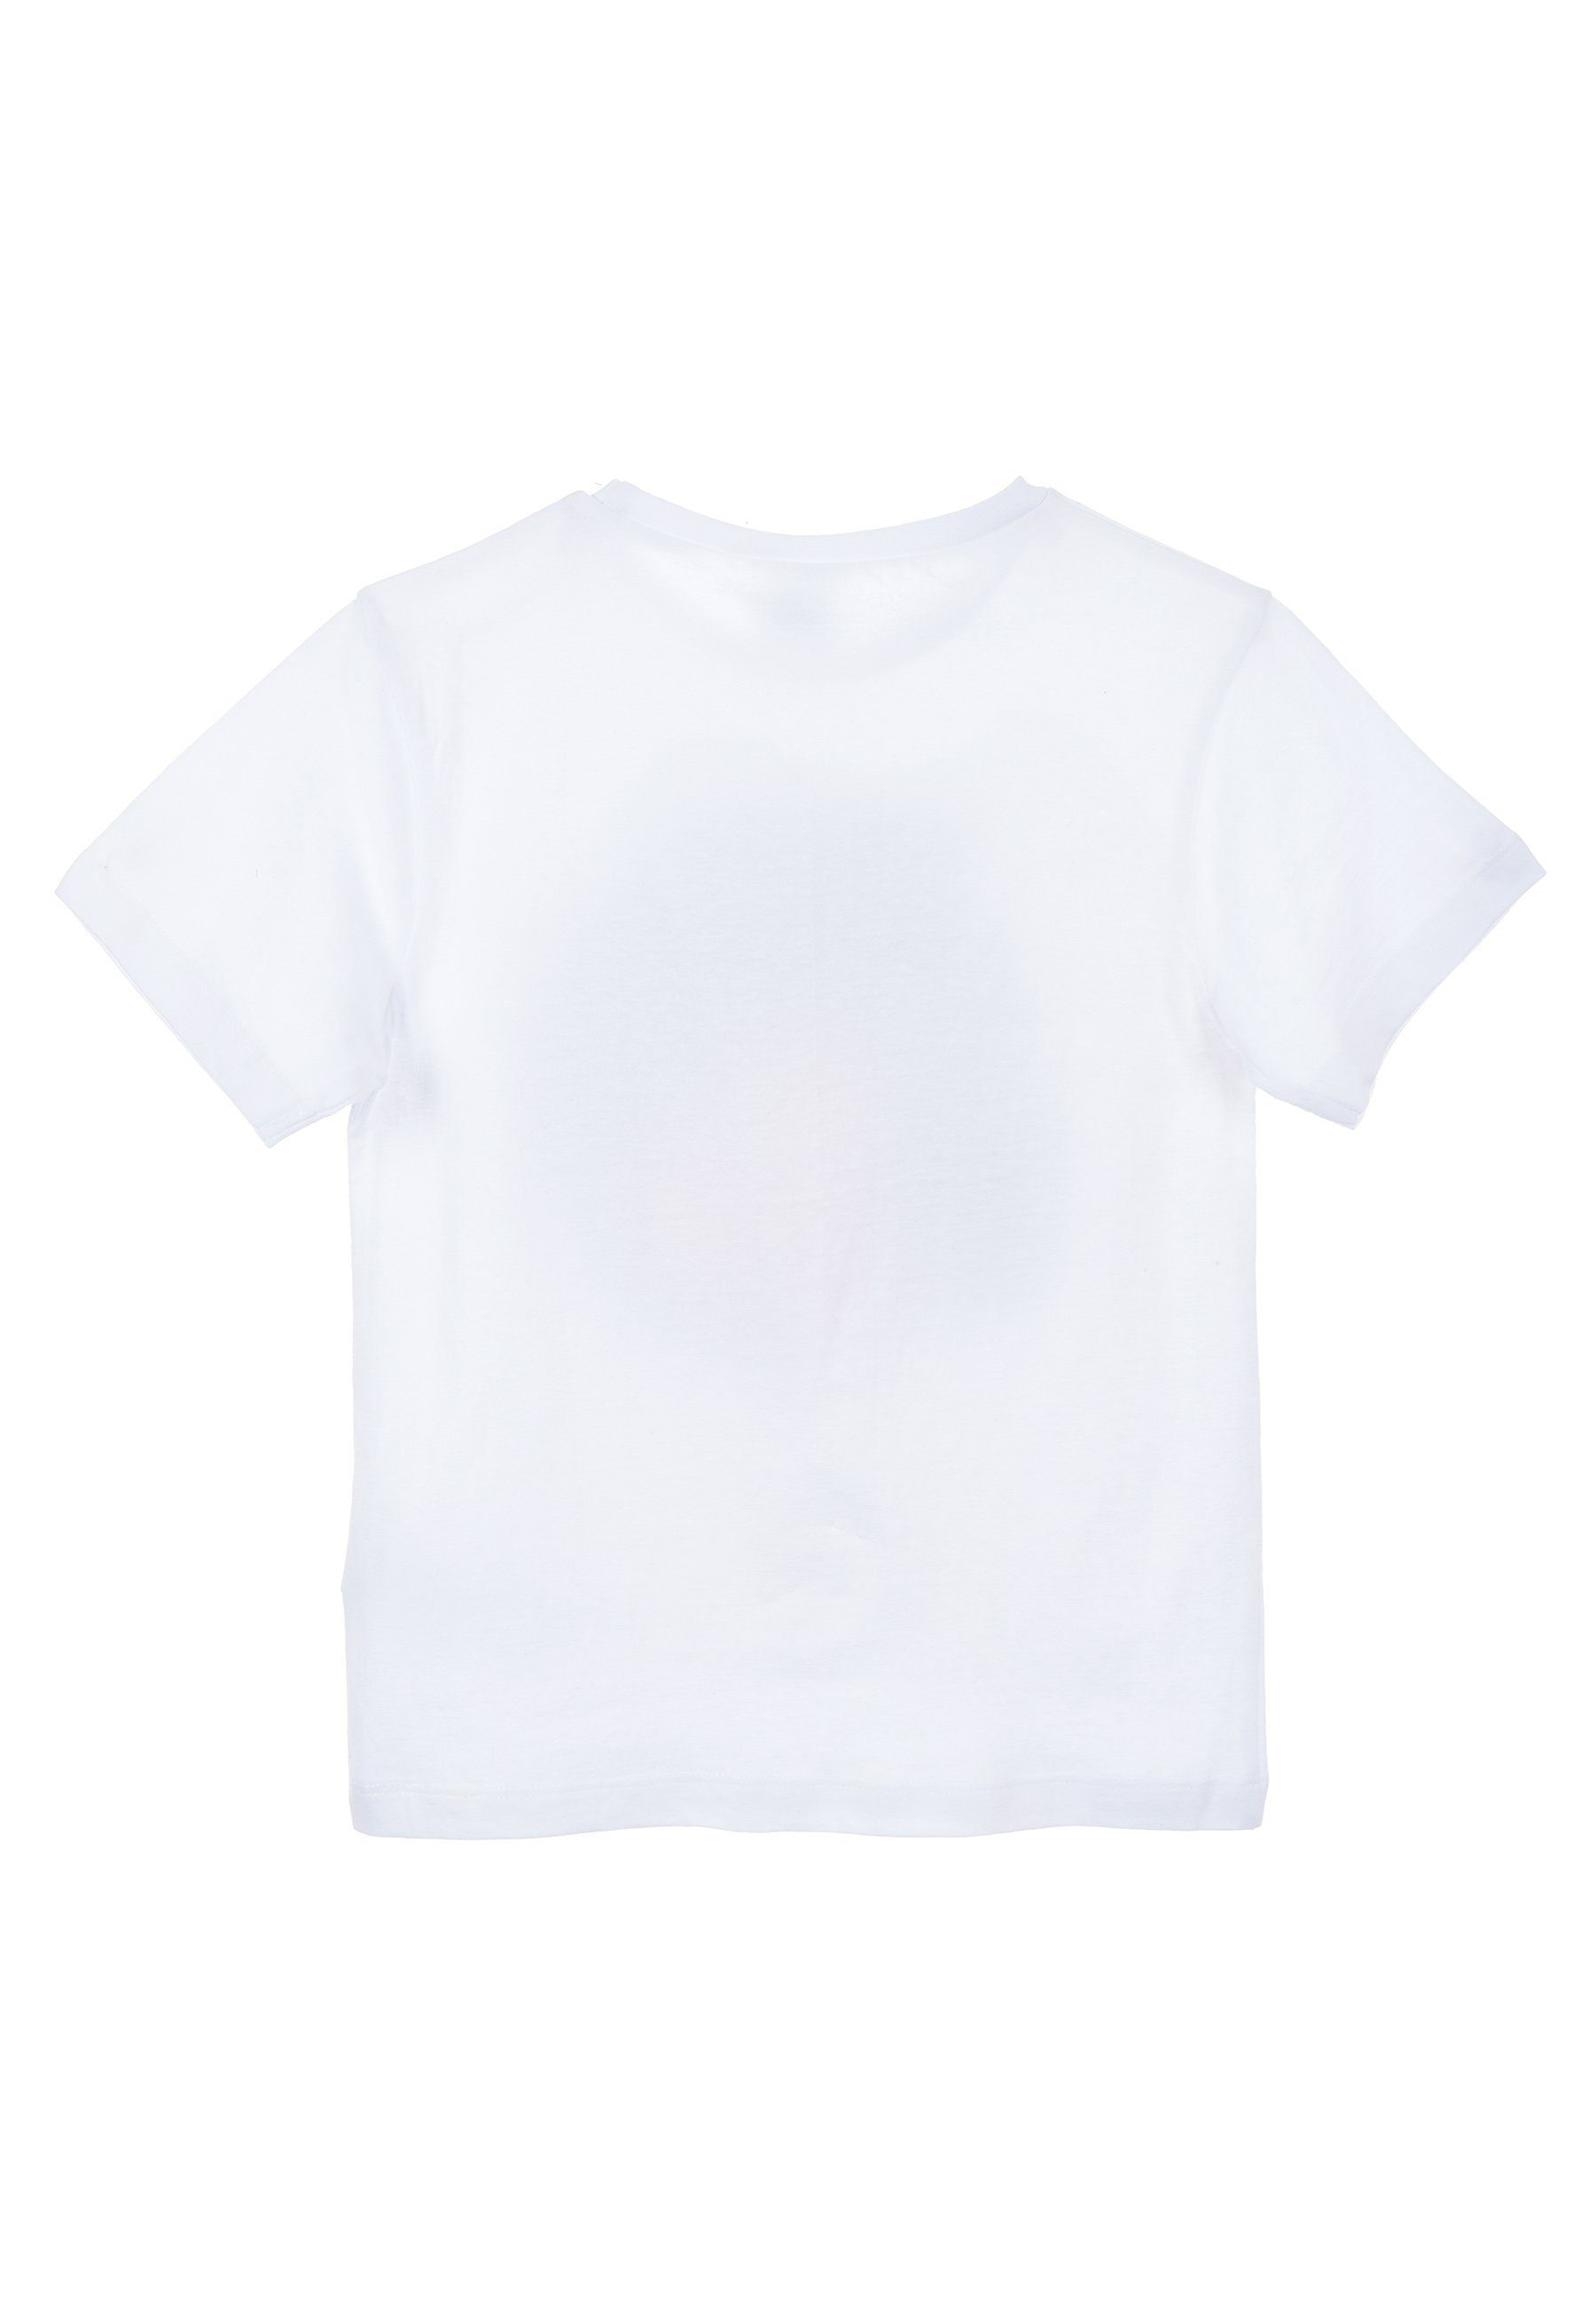 Disney Mickey Mouse T-Shirt Jungen Weiß Kinder T-Shirt Kurzarm-Shirt